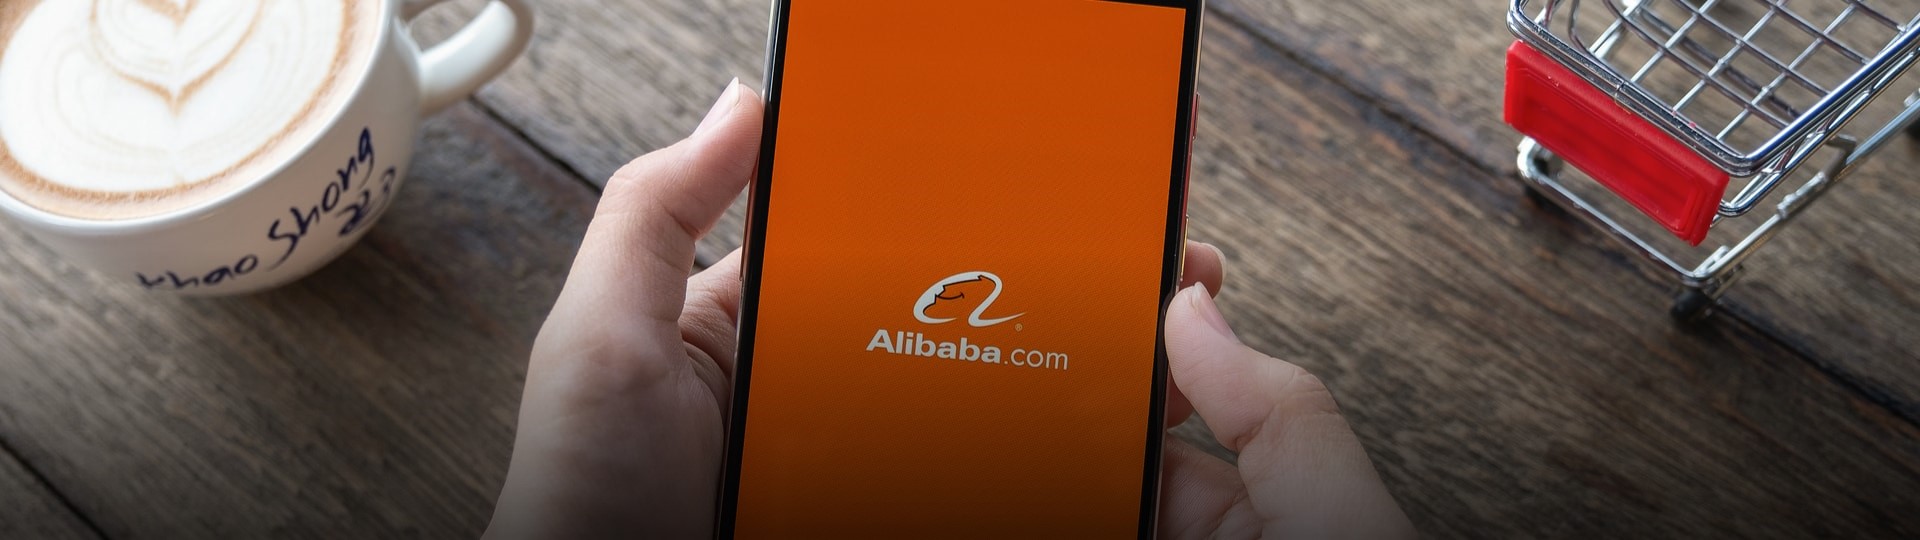 Hongkongskou ekonomiku může povzbudit čínský gigant Alibaba